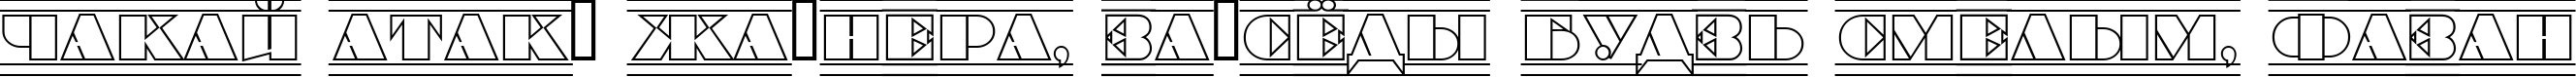 Пример написания шрифтом a_BraggaTitulOtlDcFr текста на белорусском